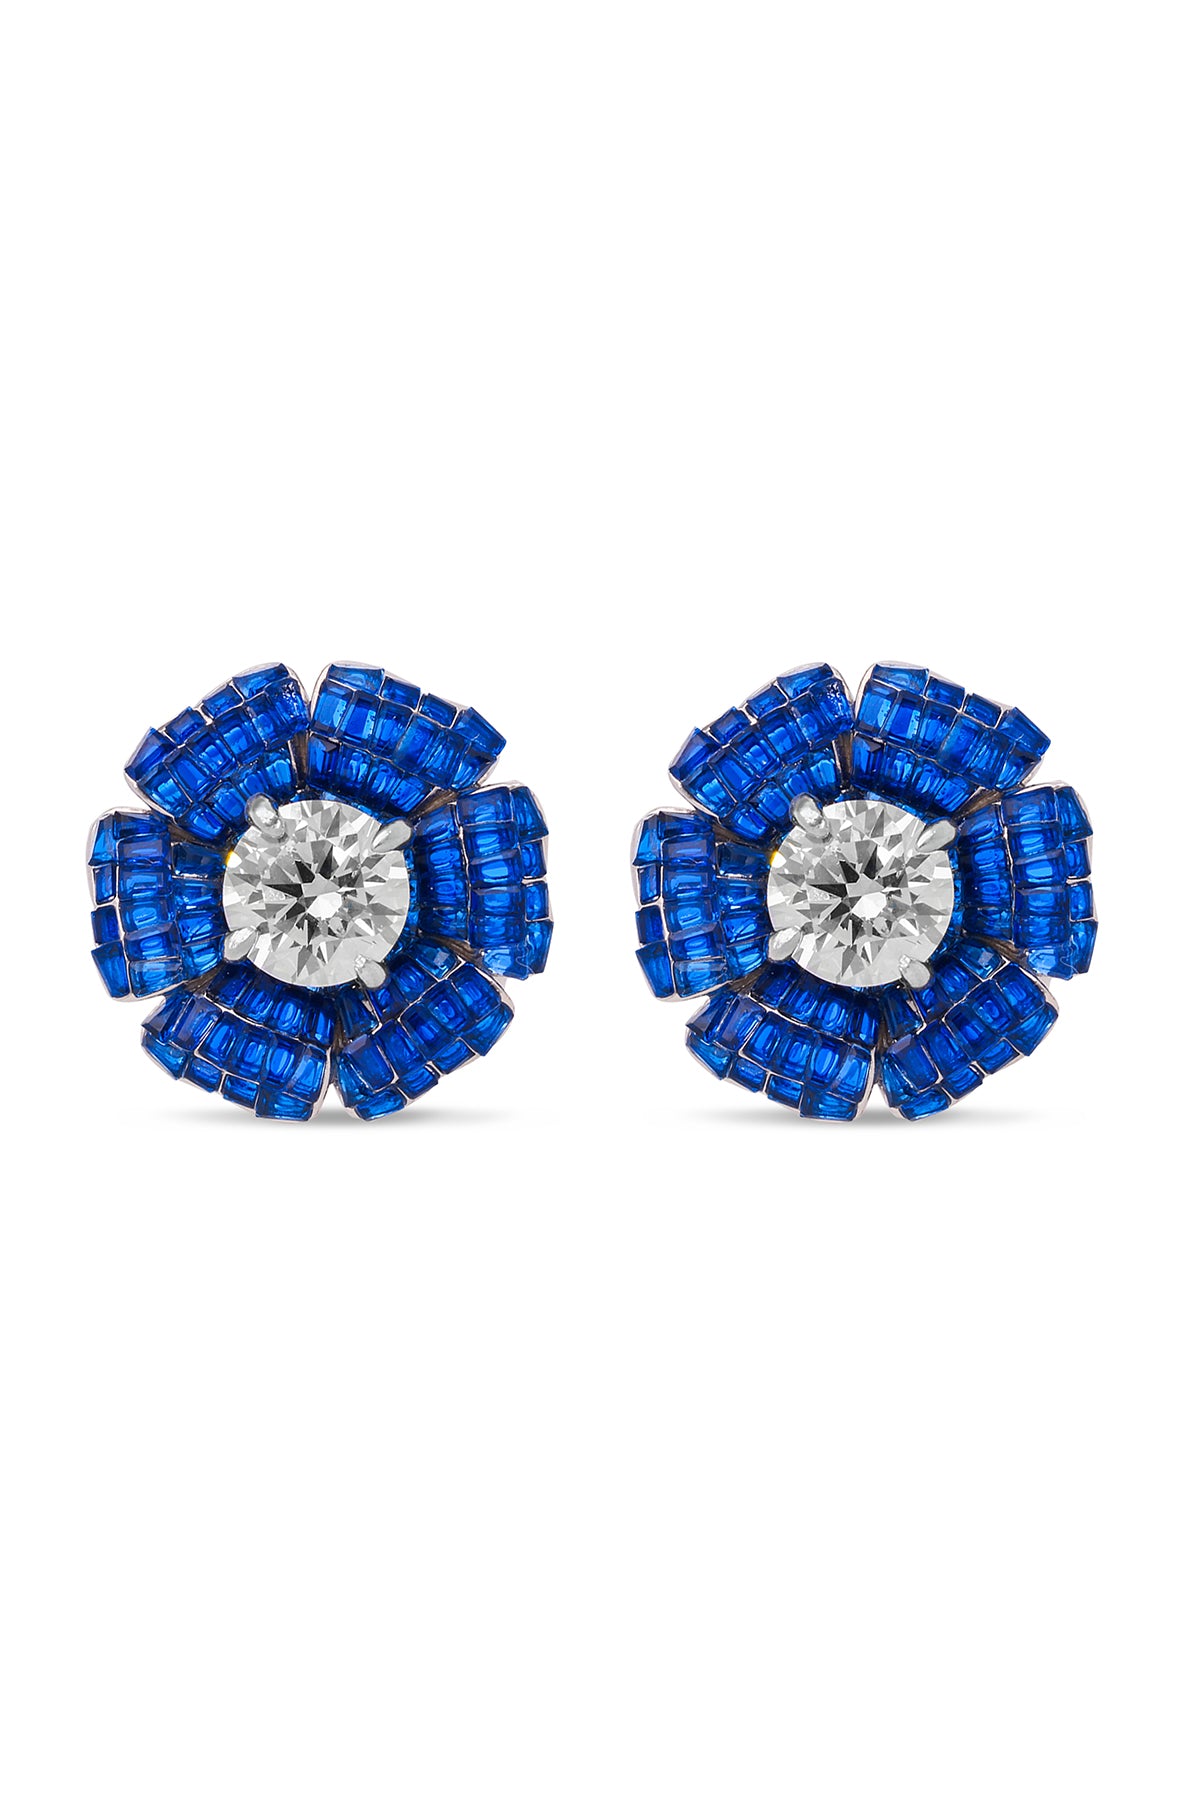 Faerie Forest Blue Sapphire Stud Earrings